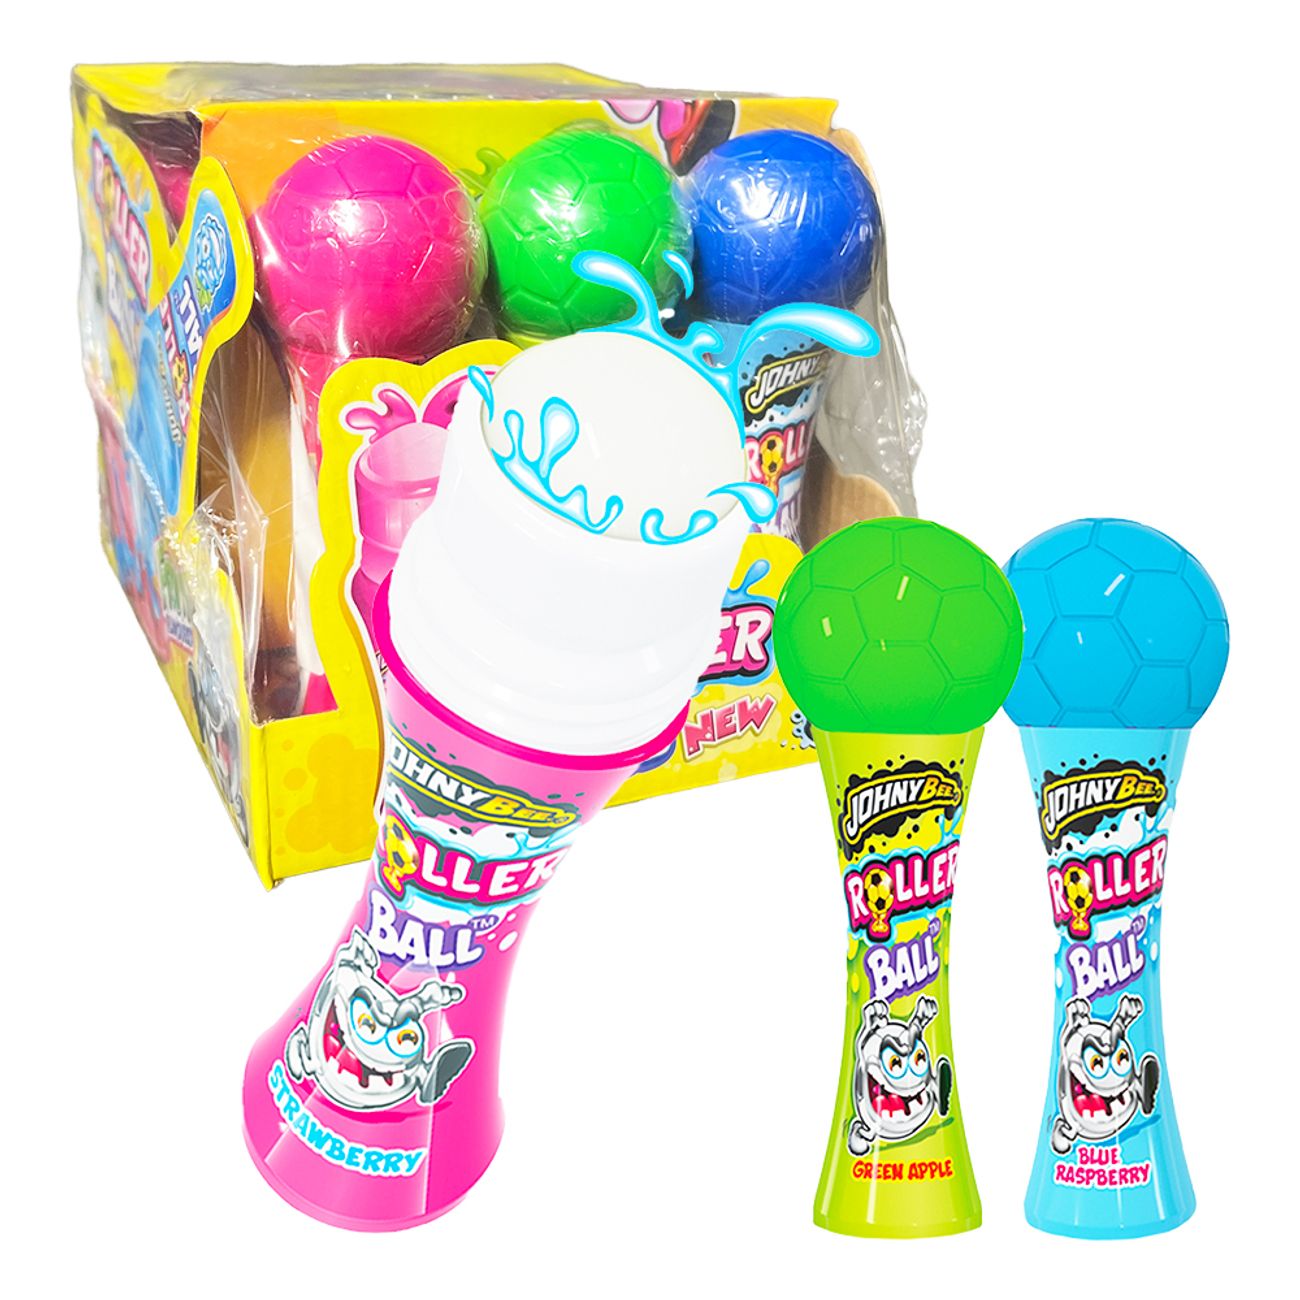 roller-ball-flytande-godis-storpack-96202-3